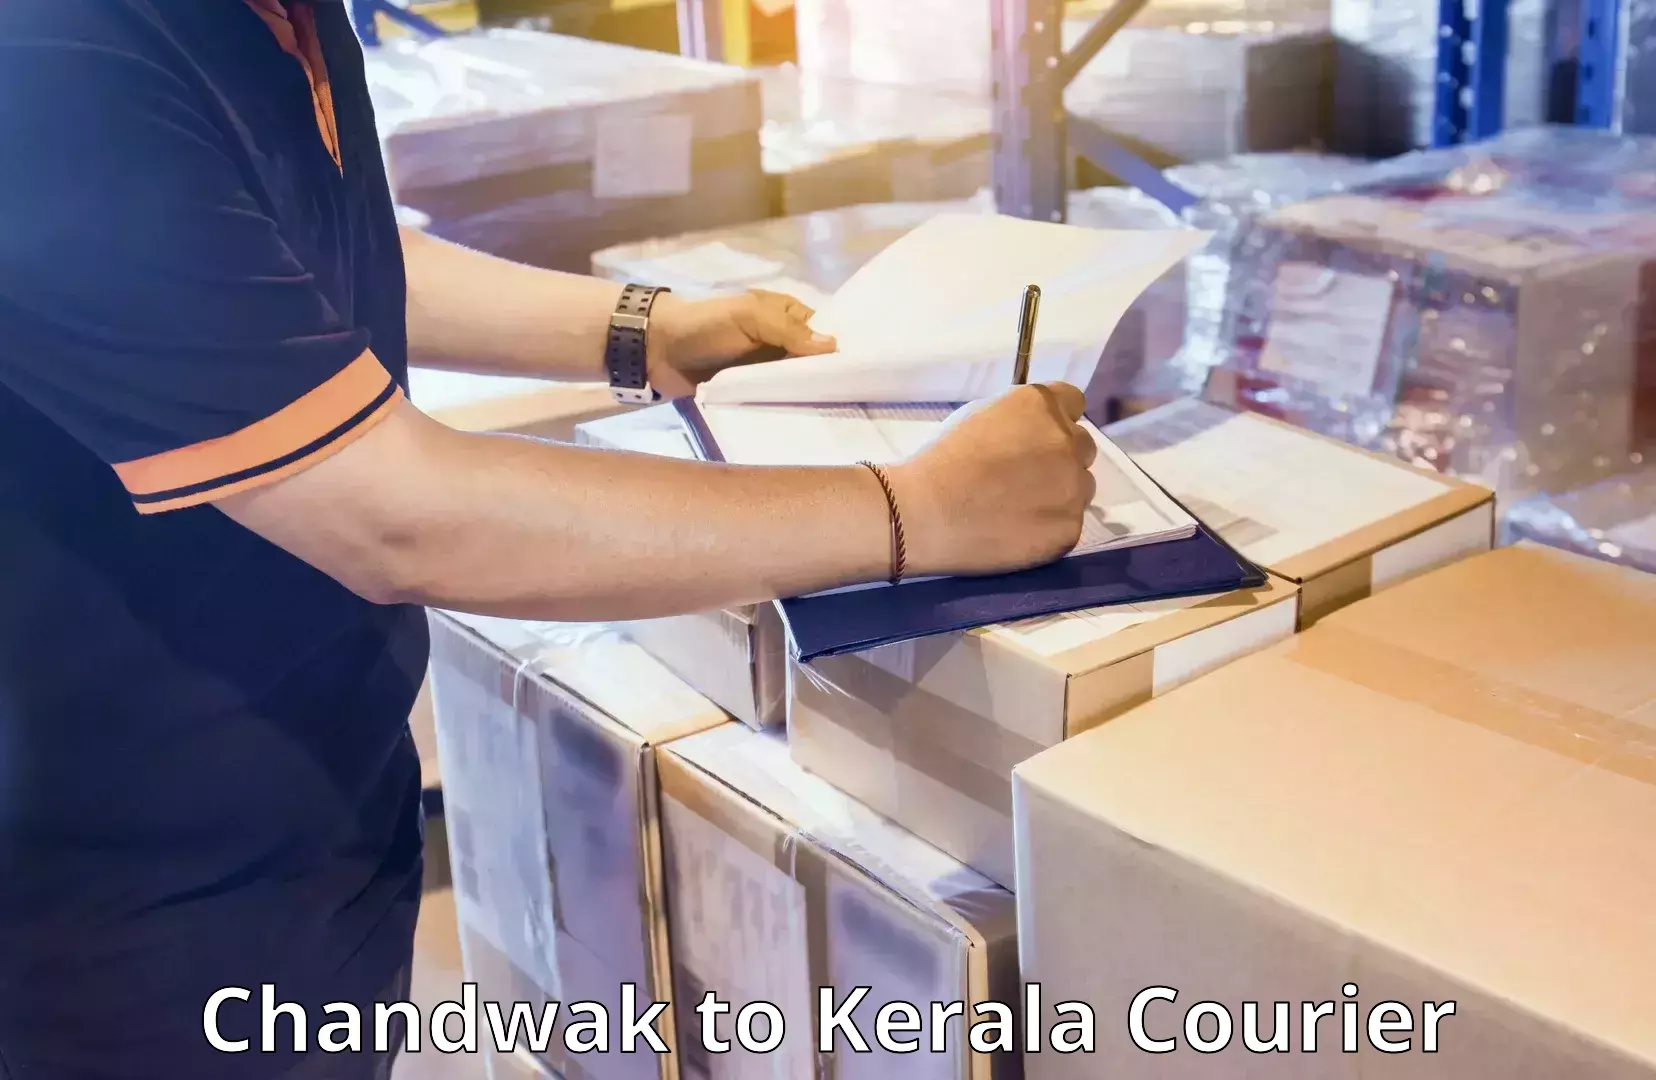 Luggage transport company Chandwak to Kerala